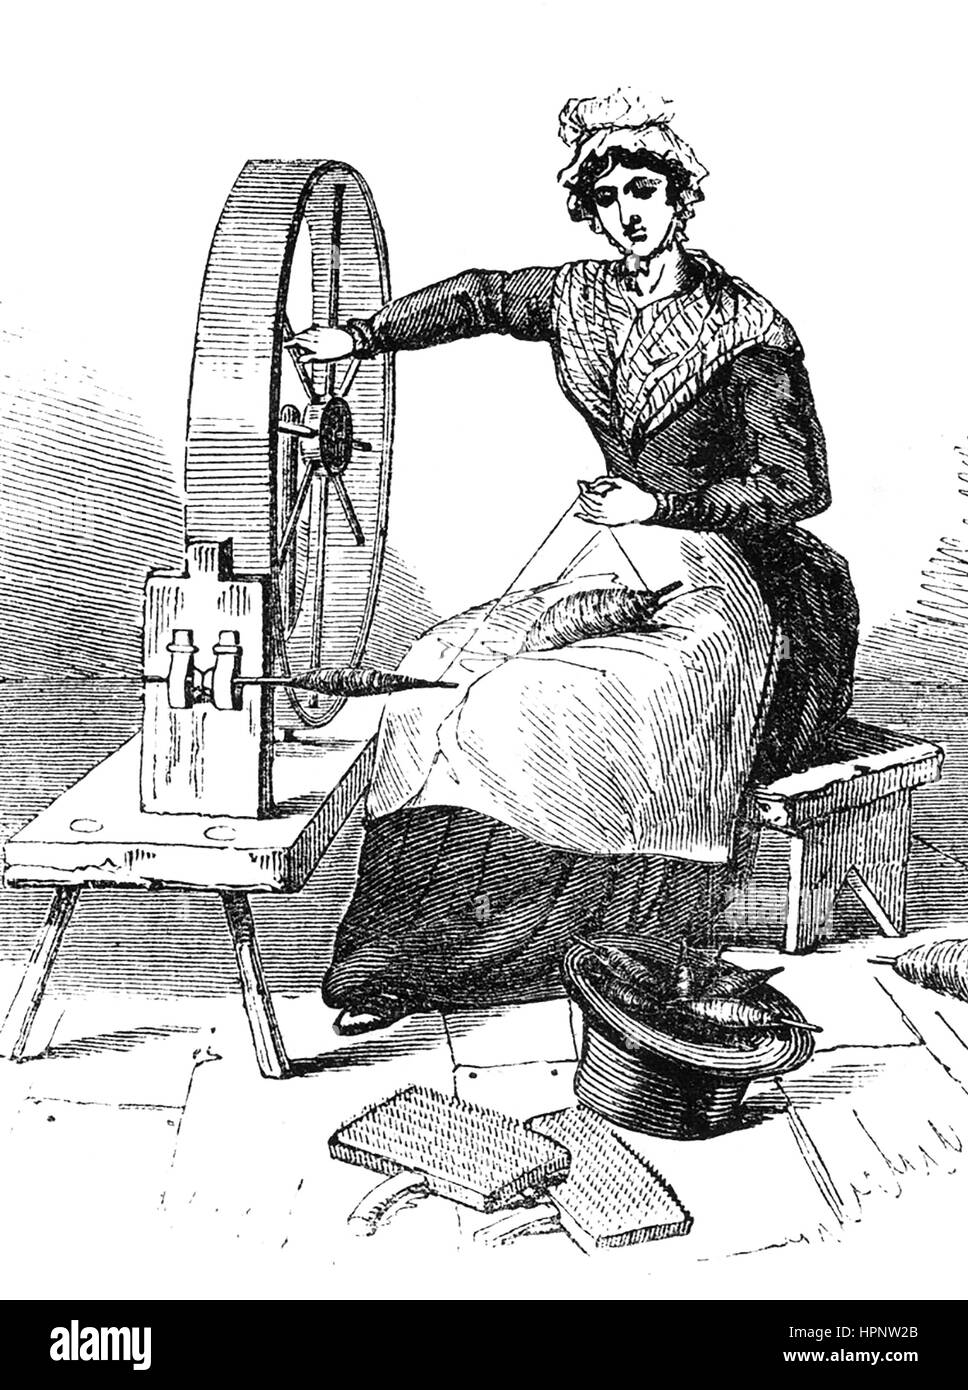 JERSEYWHEEL utilizado para hilar el algodón y la lana, y sustituido por las máquinas como el spinning jenny durante la revolución industrial. Grabado alrededor de 1800 Foto de stock